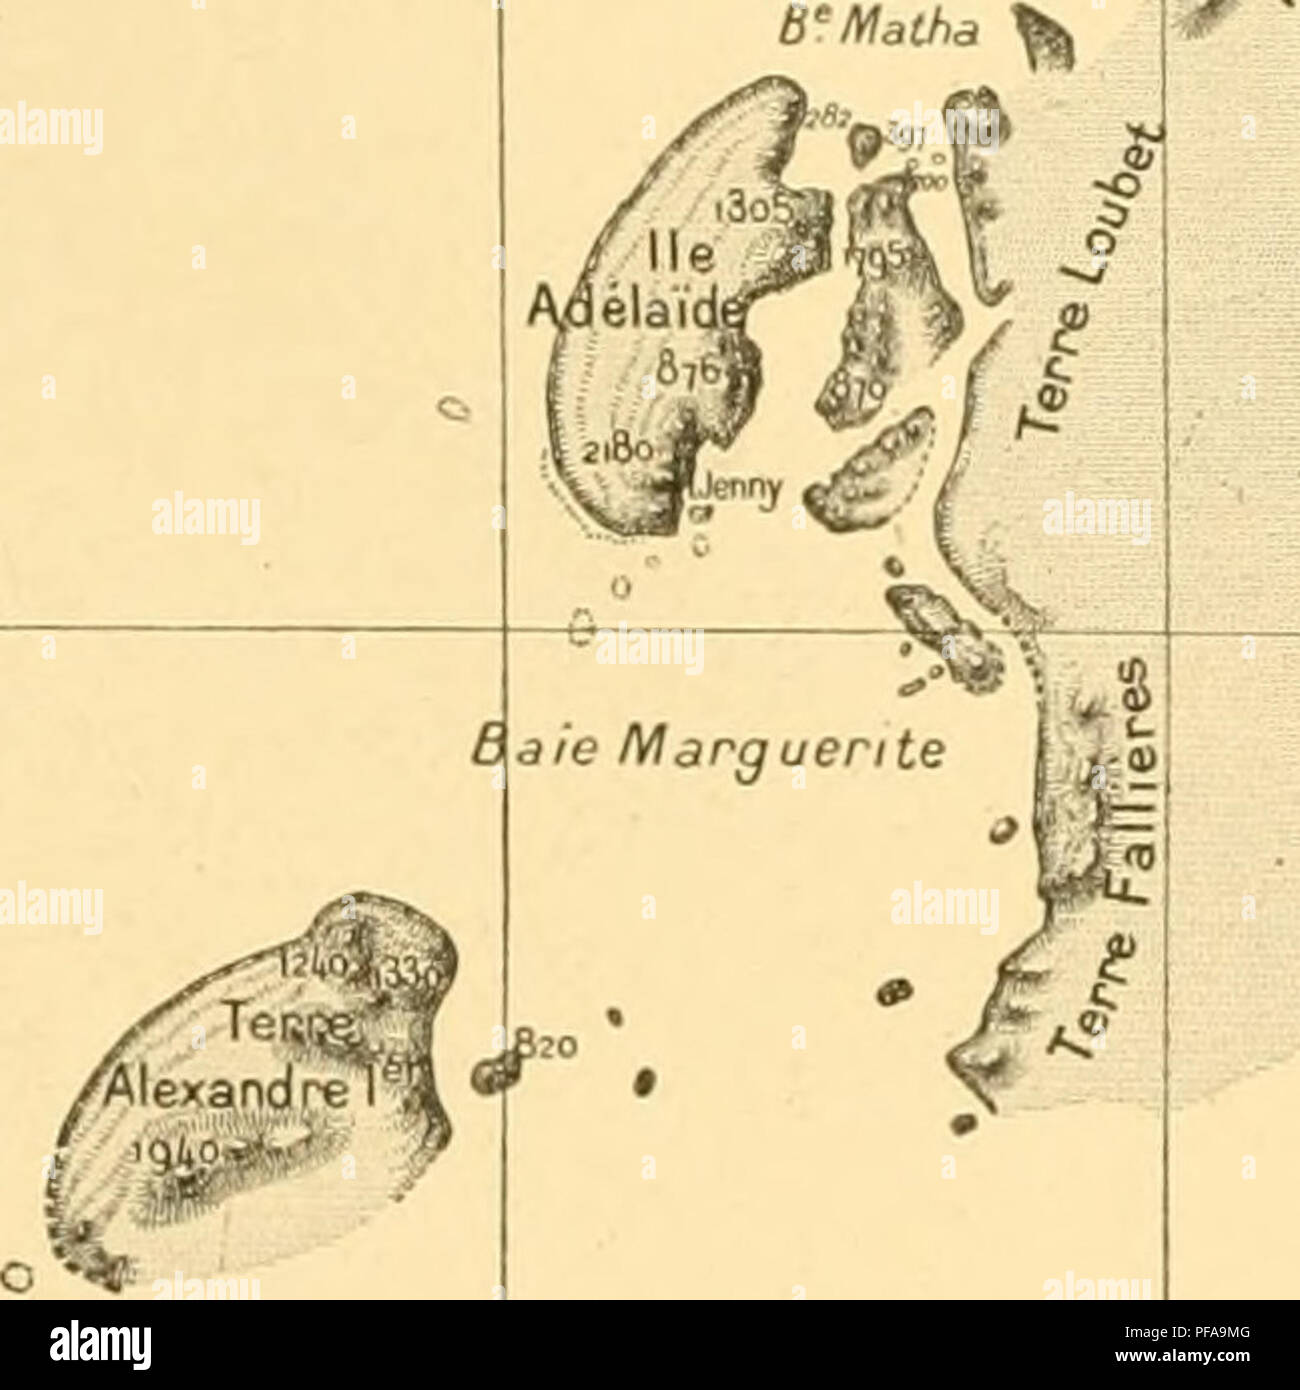 . ¨ me DeuxiÃ expÃ©dition antarctique francaise (1908-1910). Histoire naturelle -- Antarctique ; expéditions scientifiques -- Antarctique ; antarctique. tr'ii -''Â"^te^ o renaiezon -^ ^^0 y ml "-/ Ã / K. Carte de la côte Ouest de L- ANTARCTIDE SUD-AMÃRICAINE CARTE DES RÃGIONS ET RELEVEES PARCOURUES PAR L'EXPEDITION MEMBRES DE VETAT-MAJOR DU 'pourquoi pas ? " J.-B. M. CHARCOT Hydrographie BONGRAIN, Sismographie, la gravitation terrestre. Observations astronomiques. L'ooXngit : T.(.Spongiaircs Arlhropodei Ãchinodcrmca..staurclUunparaMcÃ¹.O.de plancton, Botanique. R.-E. GODFROY María©es. Topographie c6l Banque D'Images